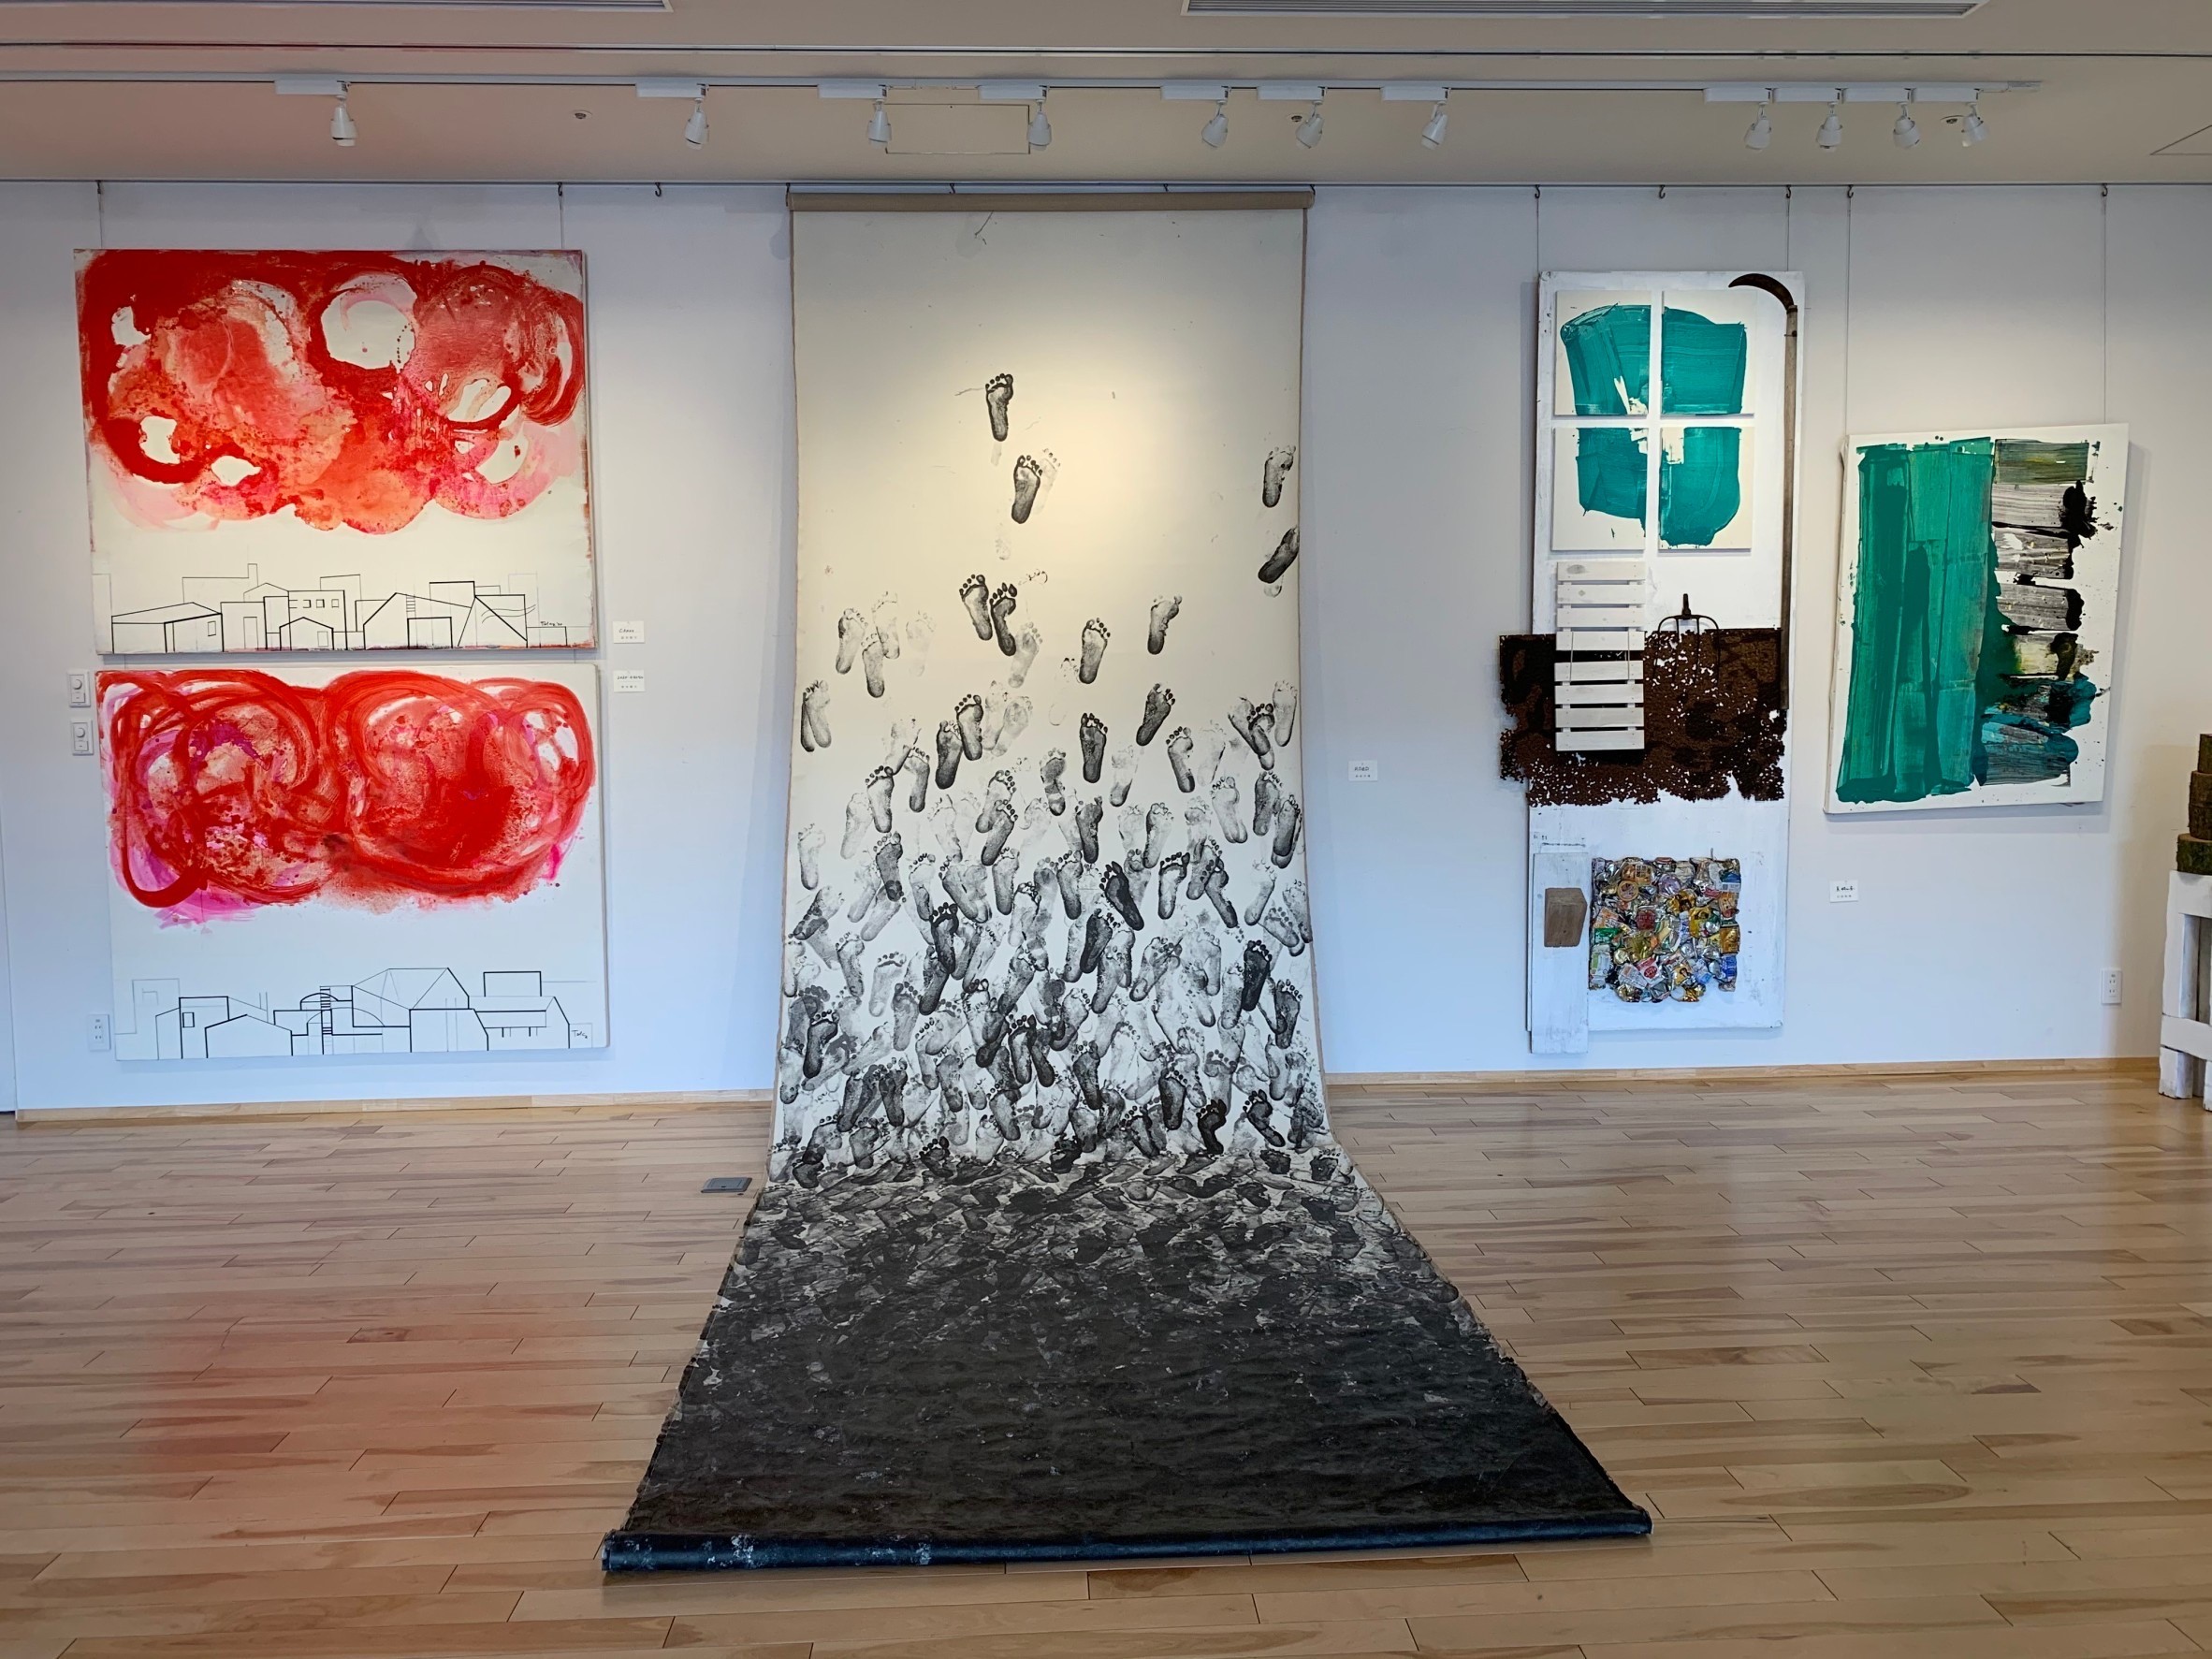 サイ・トゥオンブリ hommage展6 -平面・立体-　アメリカの現代美術作家サイ・トゥオンブリを通して啓発された仲間による絵画と立体展